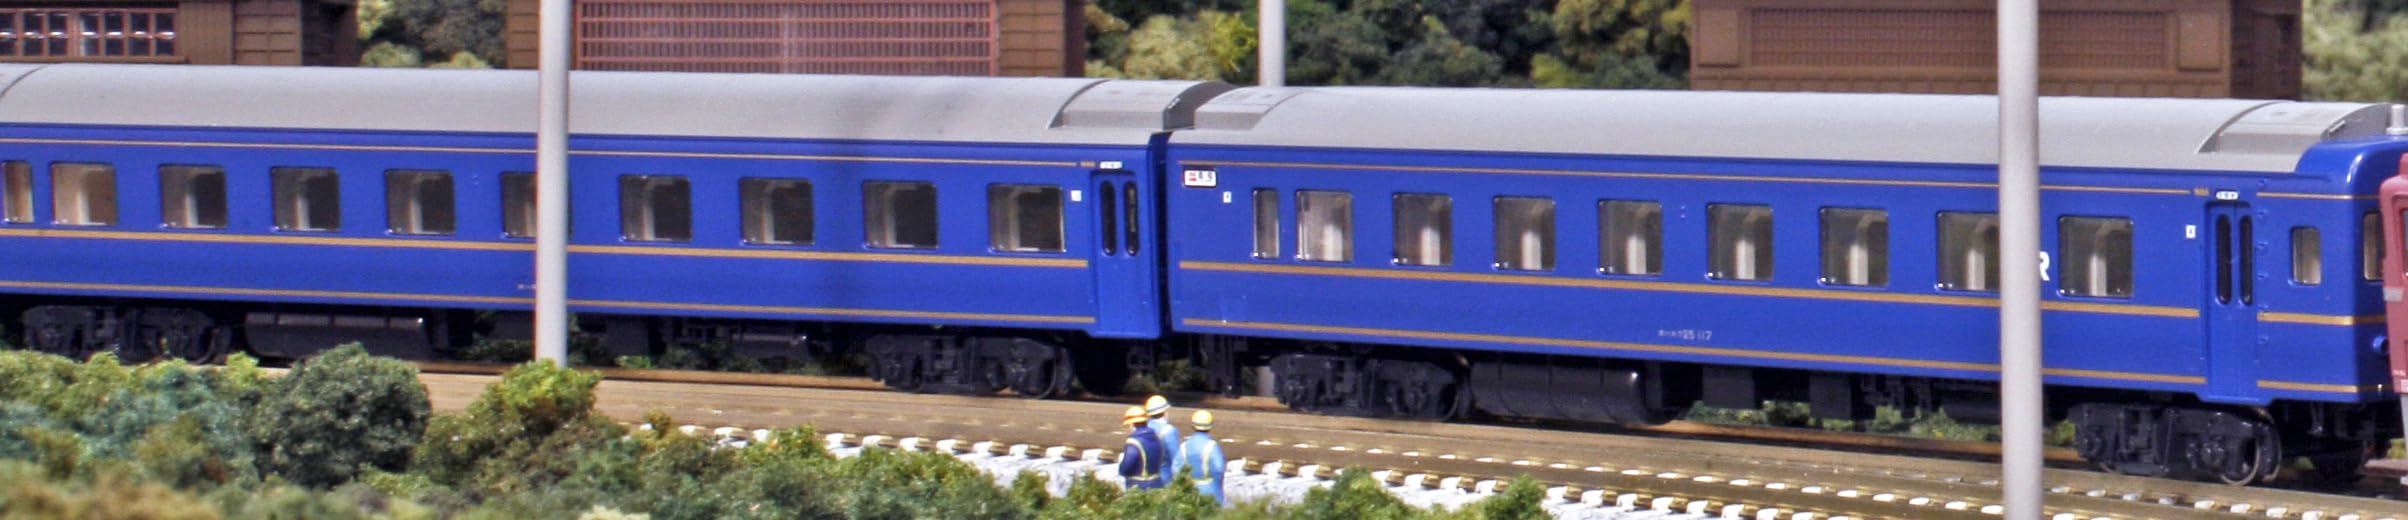 Kato Japan 24 Series N Gauge Sleeper Express Nihonkai 5-Car Extension Set 10-882 Model Train Passenger Cars